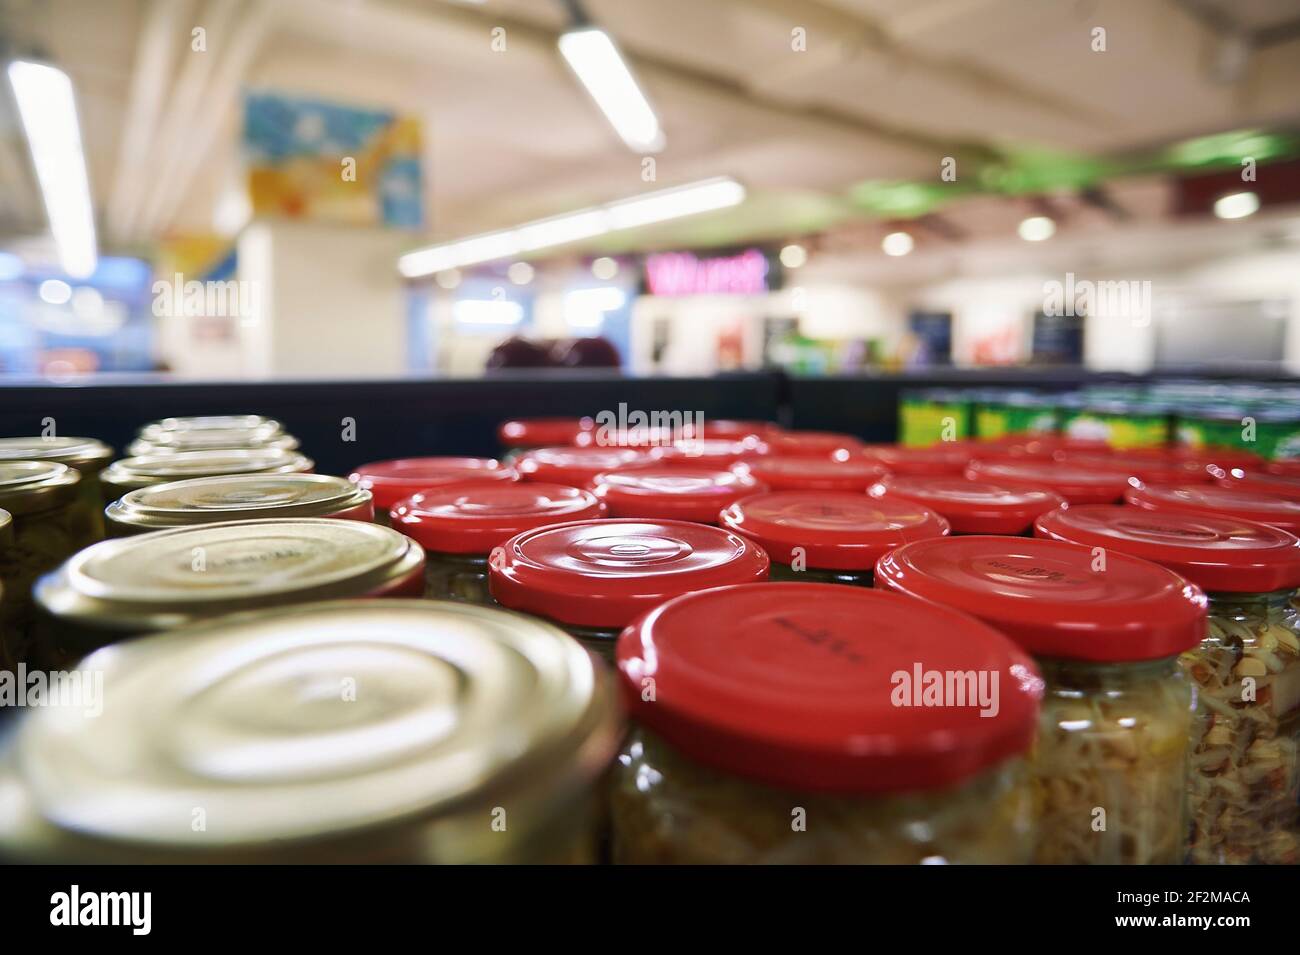 Perspektivischer Blick in einen Supermarkt über Glaskonserven auf der Supermarkt Regal Stockfoto